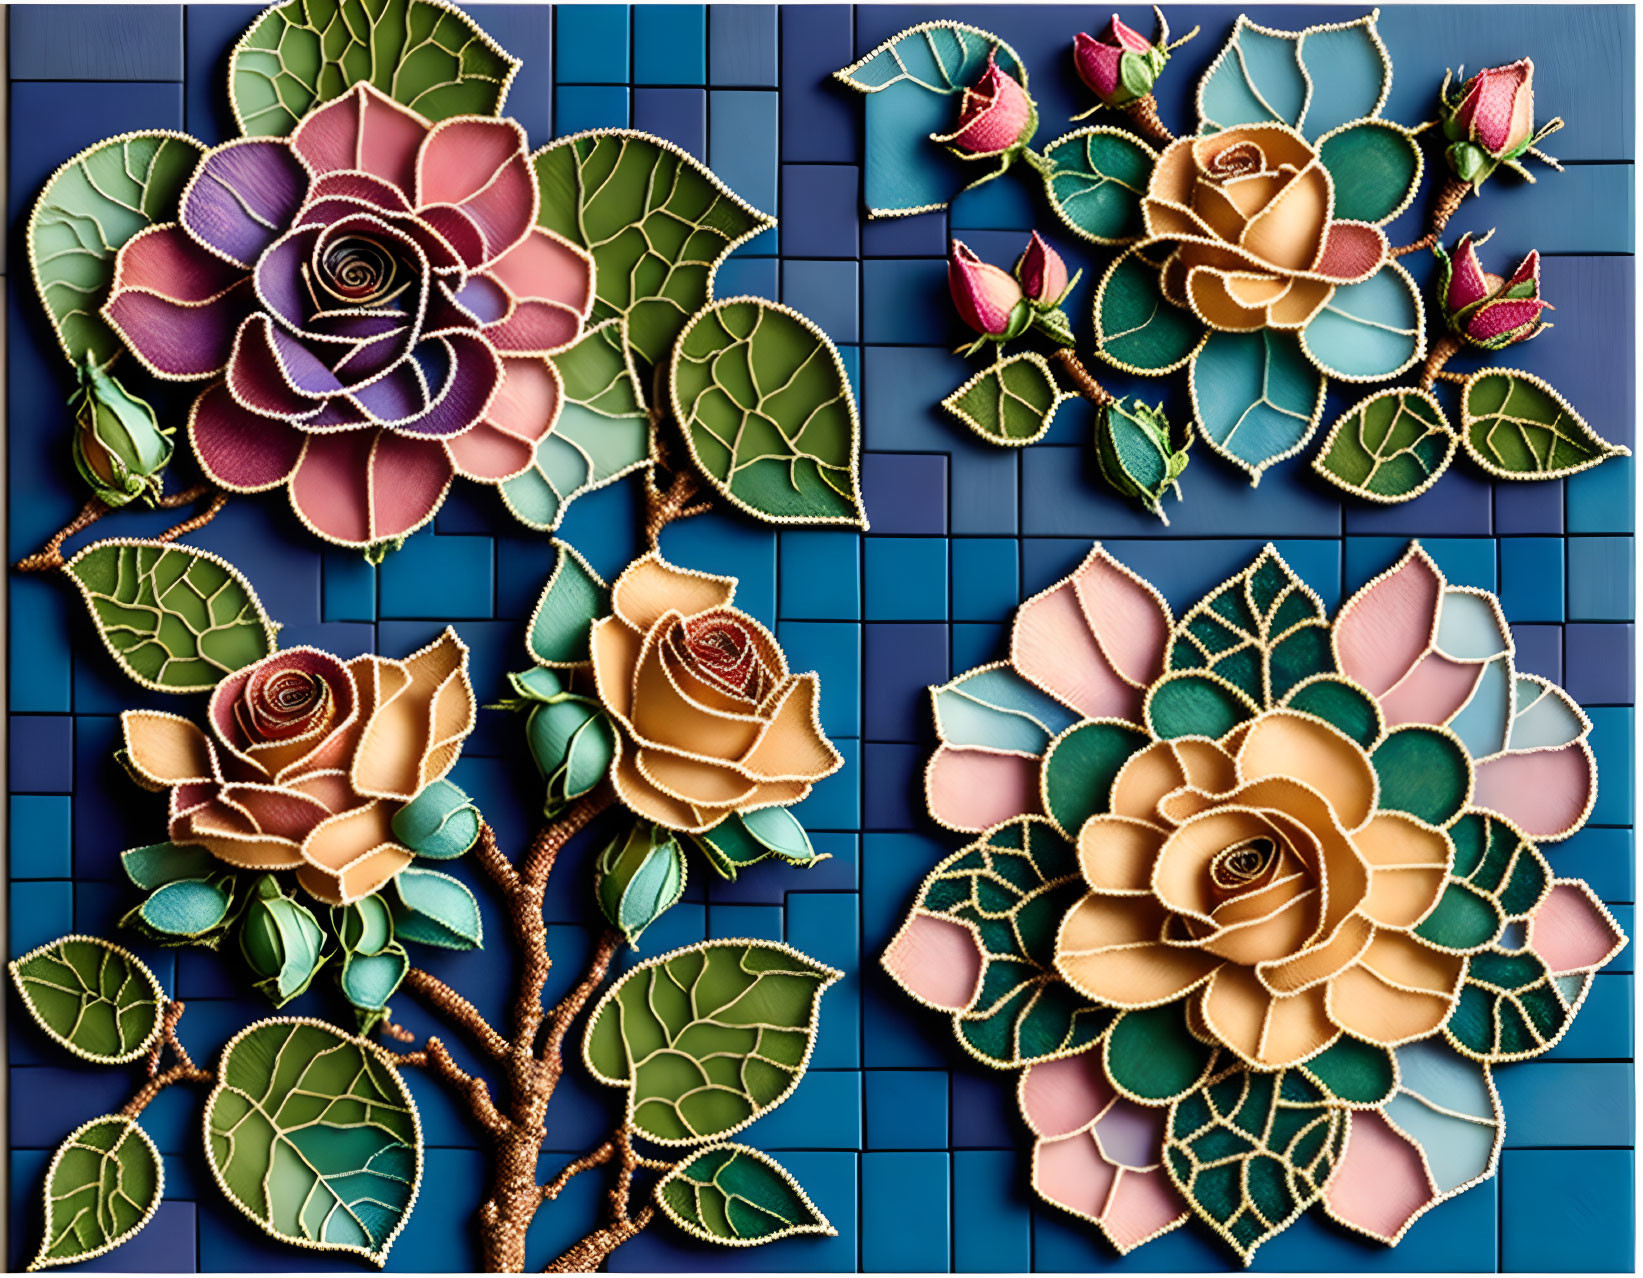 Tile roses